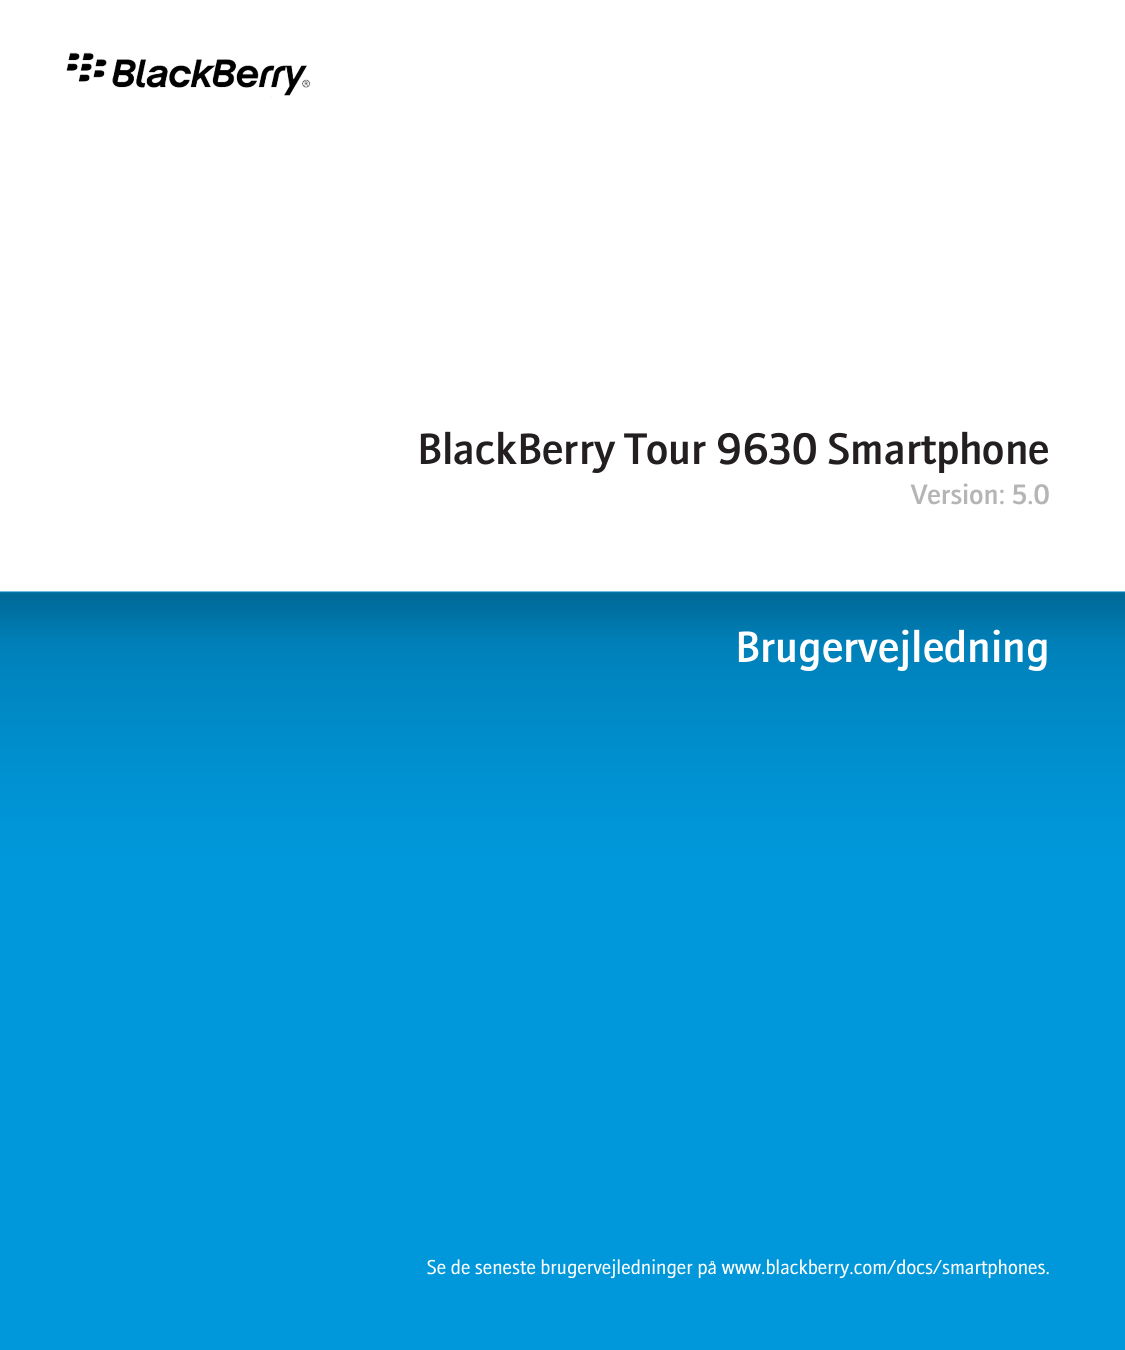 BlackBerry Tour 9630 SmartphoneVersion: 5.0BrugervejledningSe de seneste brugervejledninger på www.blackberry.com/docs/smartphon